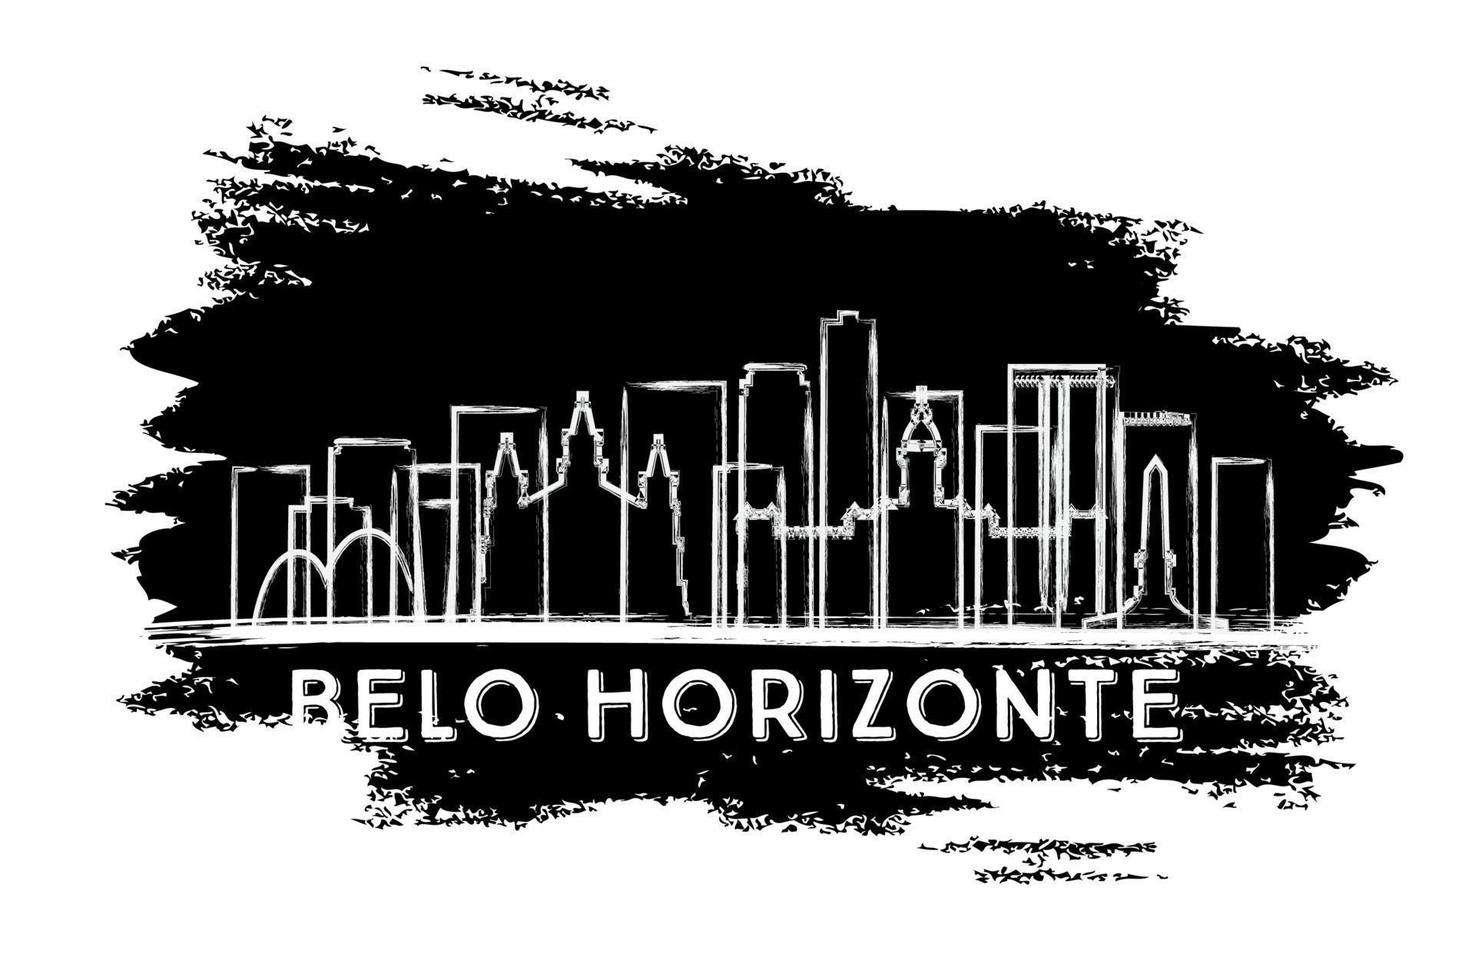 silueta del horizonte de la ciudad de belo horizonte brasil. boceto dibujado a mano. vector